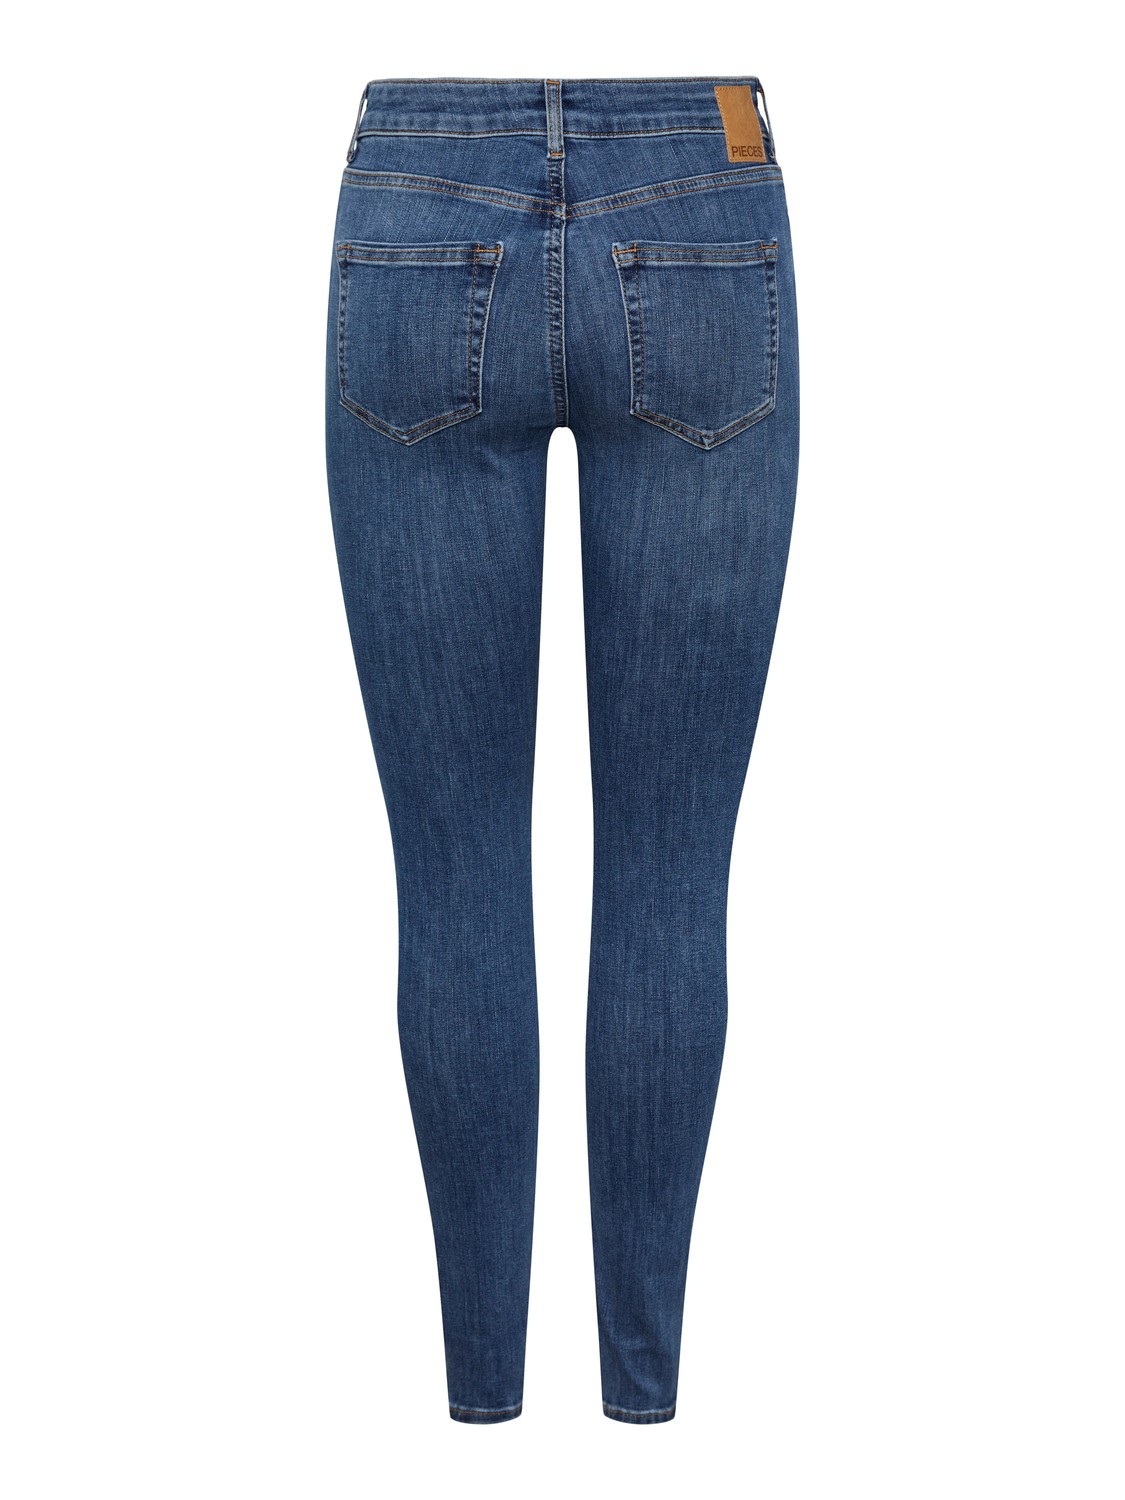 Jeans Delly skn MB184